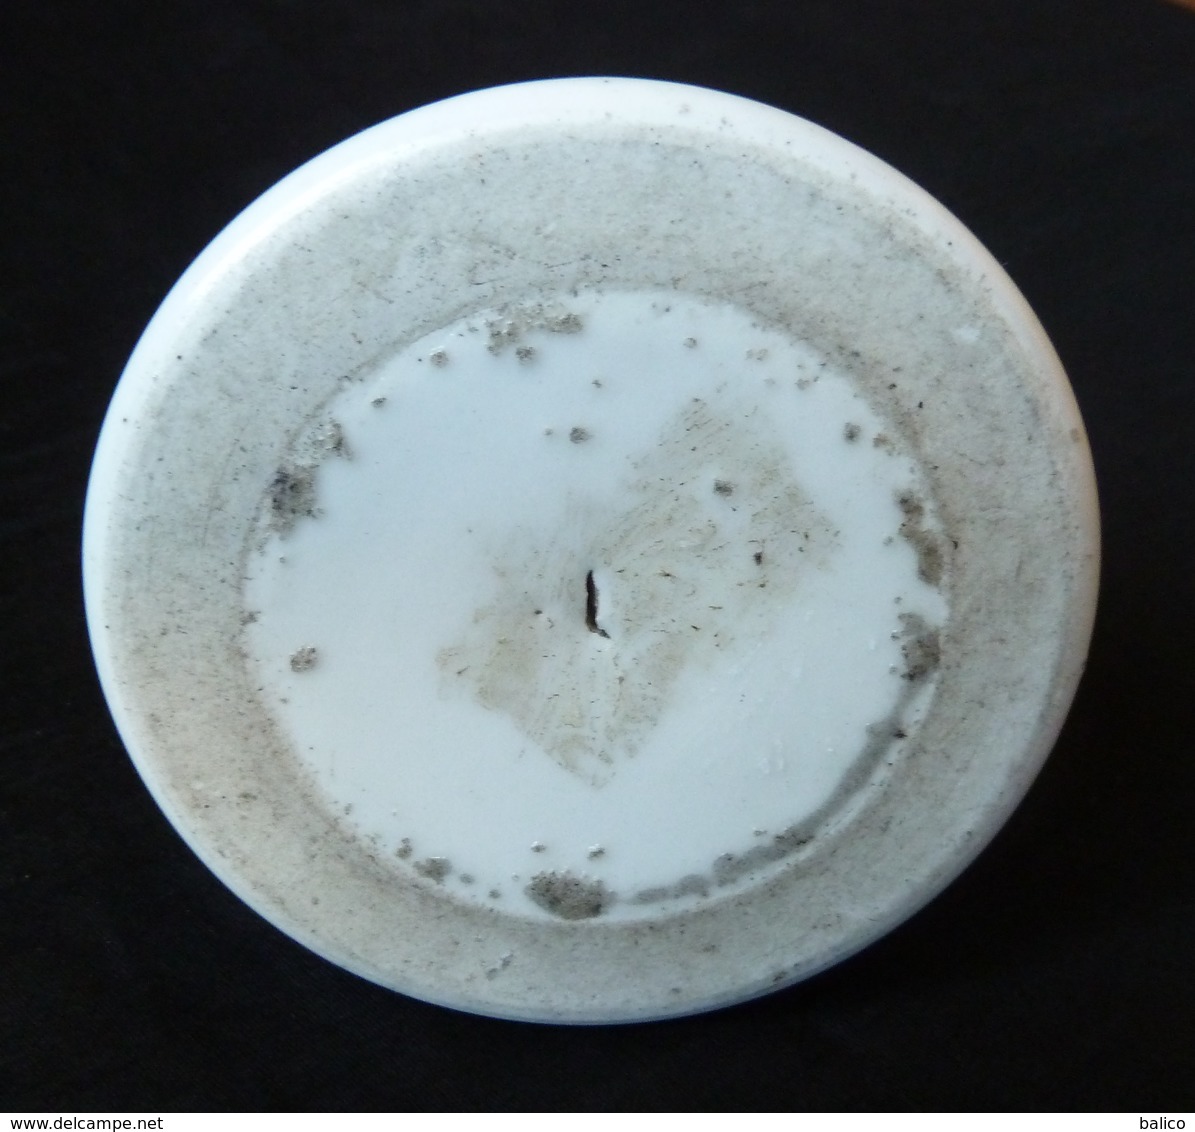 Ancien Pyrogène Porcelaine Blanc Porte Allumette 19eme Siecle - Pyrogènes